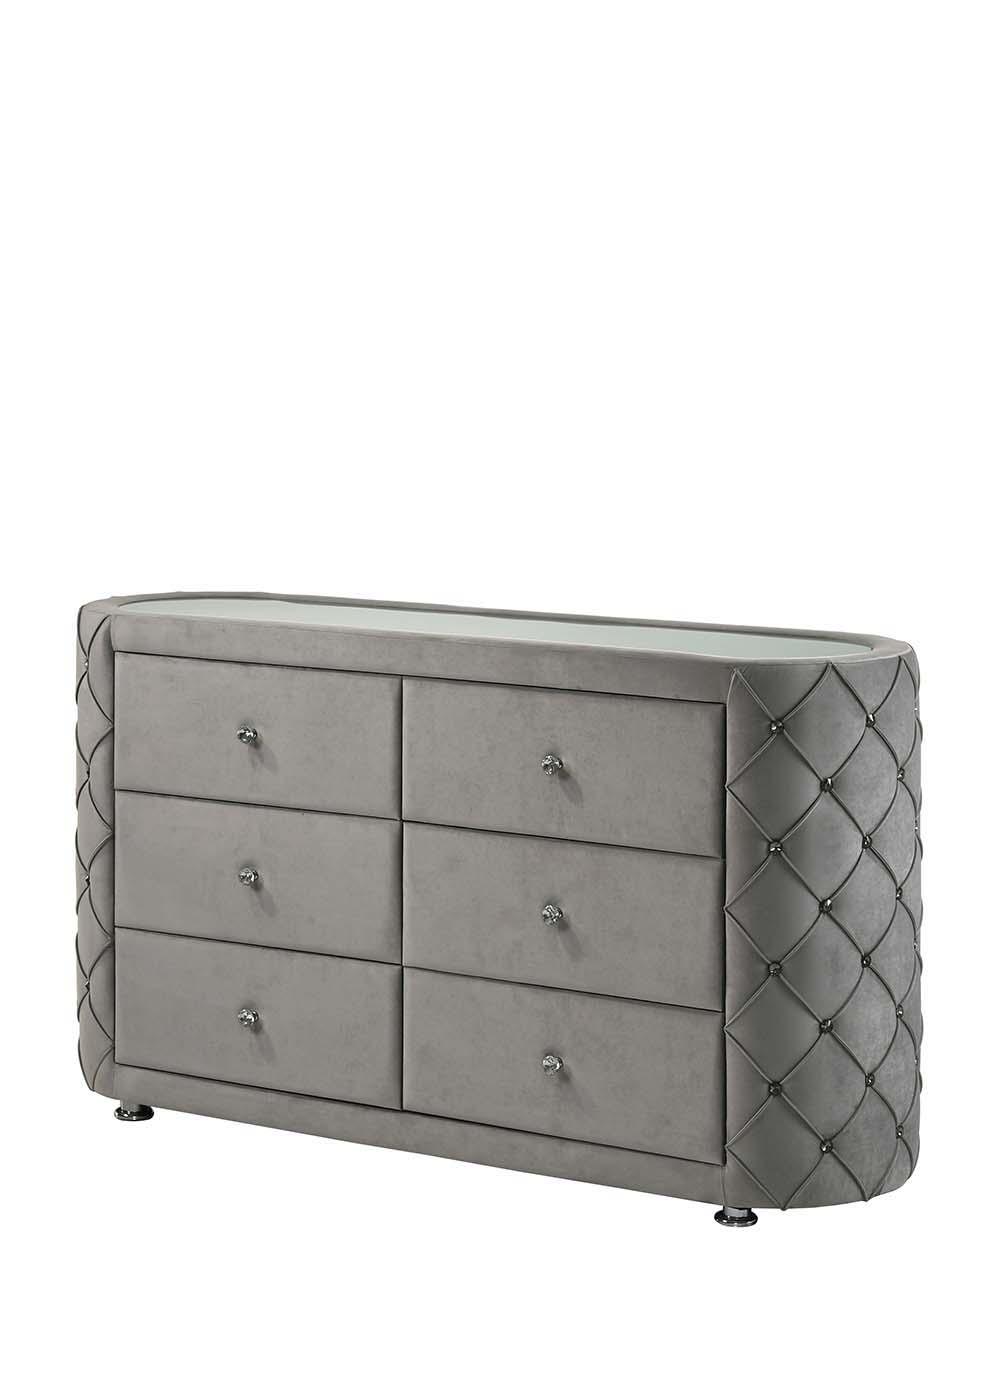 ACME - Perine - Dresser - Gray Velvet - 5th Avenue Furniture